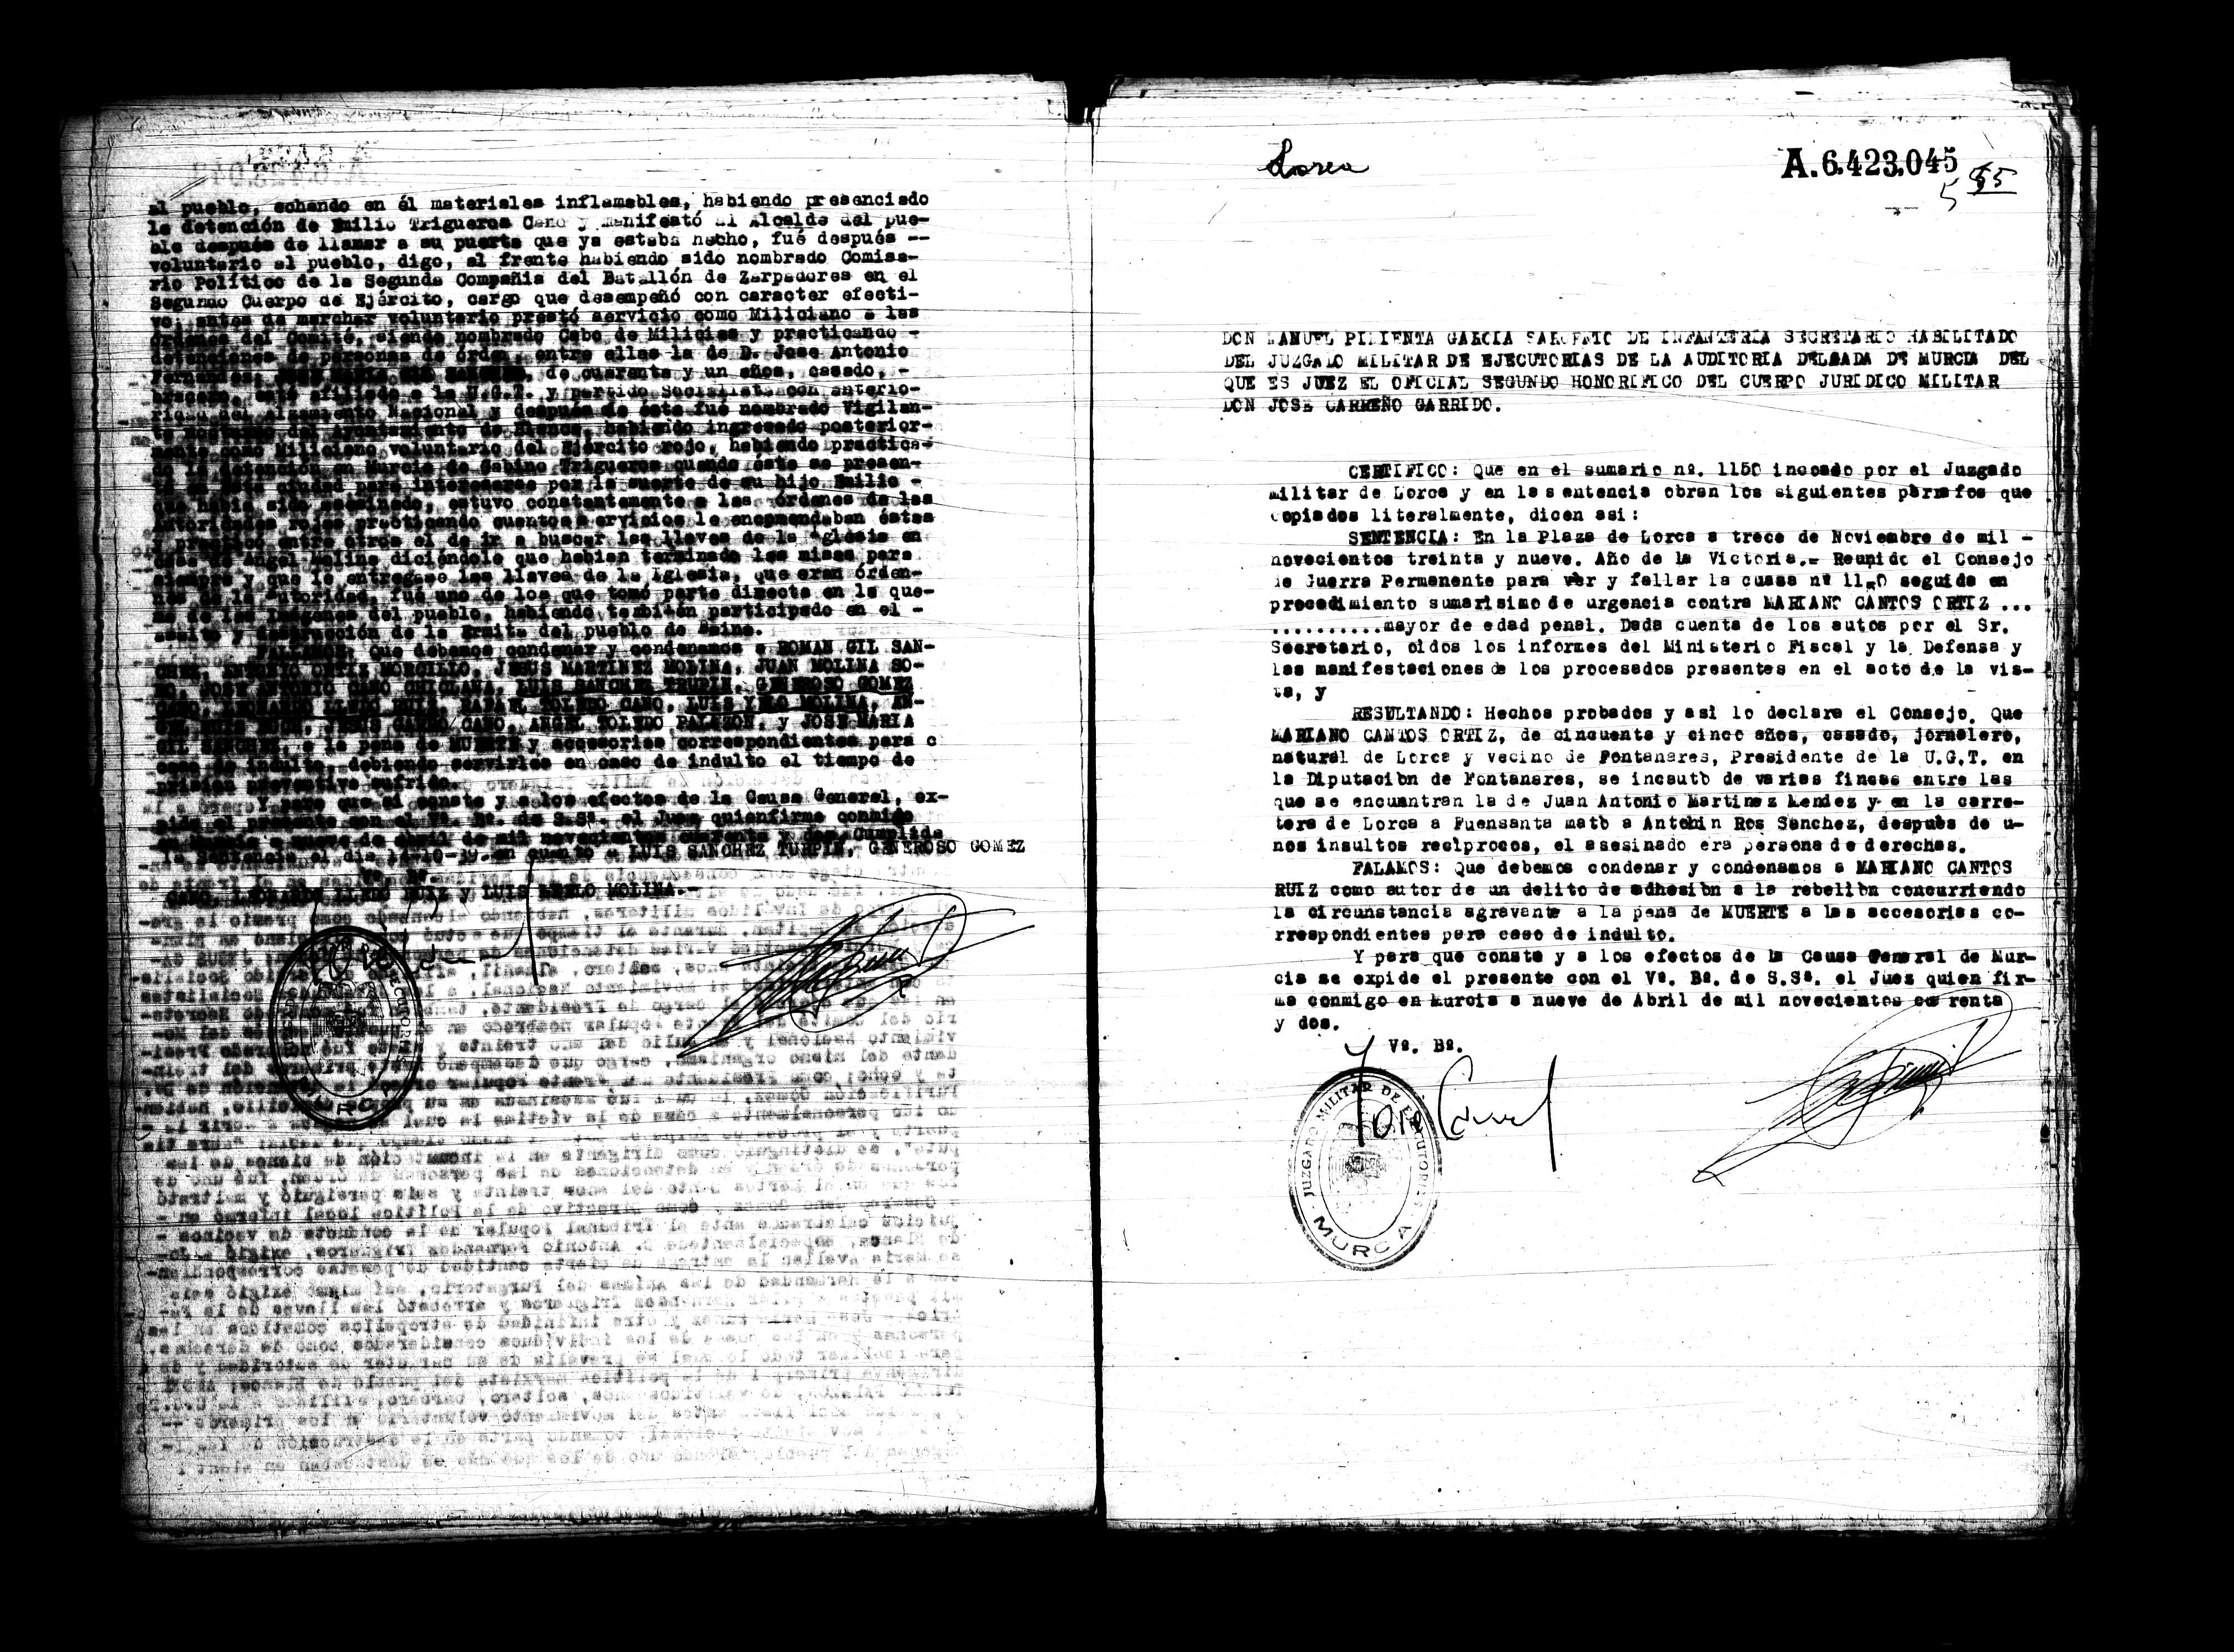 Certificado de la sentencia pronunciada contra Mariano Cantos Ortiz, causa 1150, el 9 de abril de 1942.